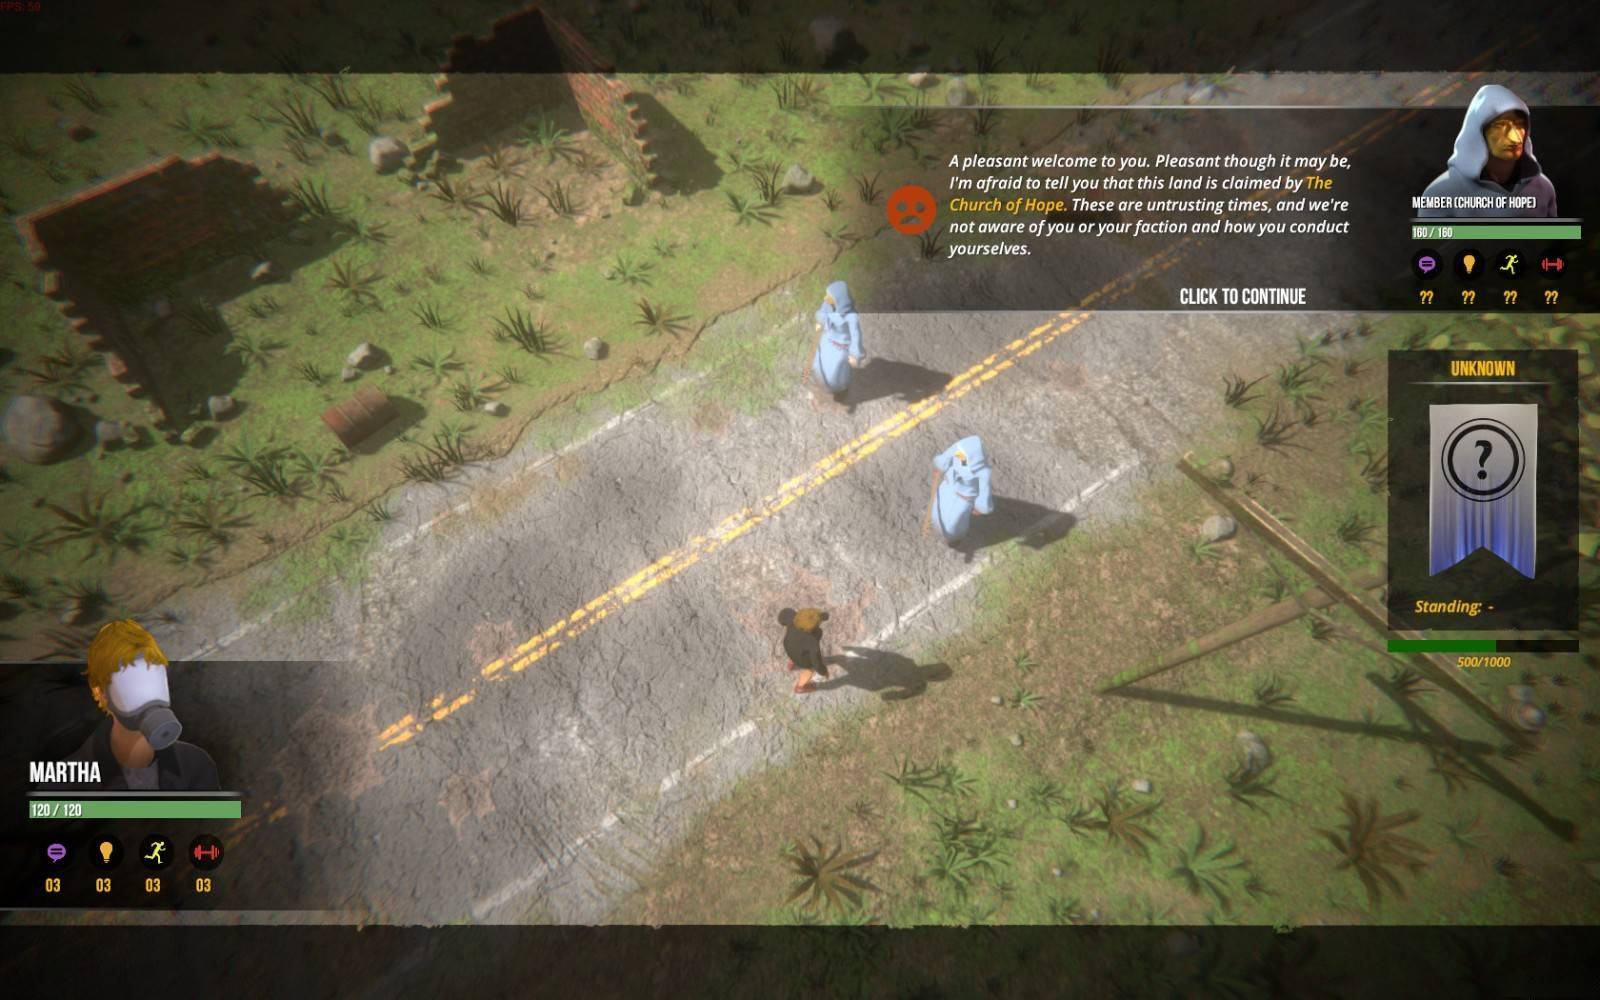 末世生存管理模拟游戏《庇护所2》发售时间确认 将于9月21日发售_泽客资源网